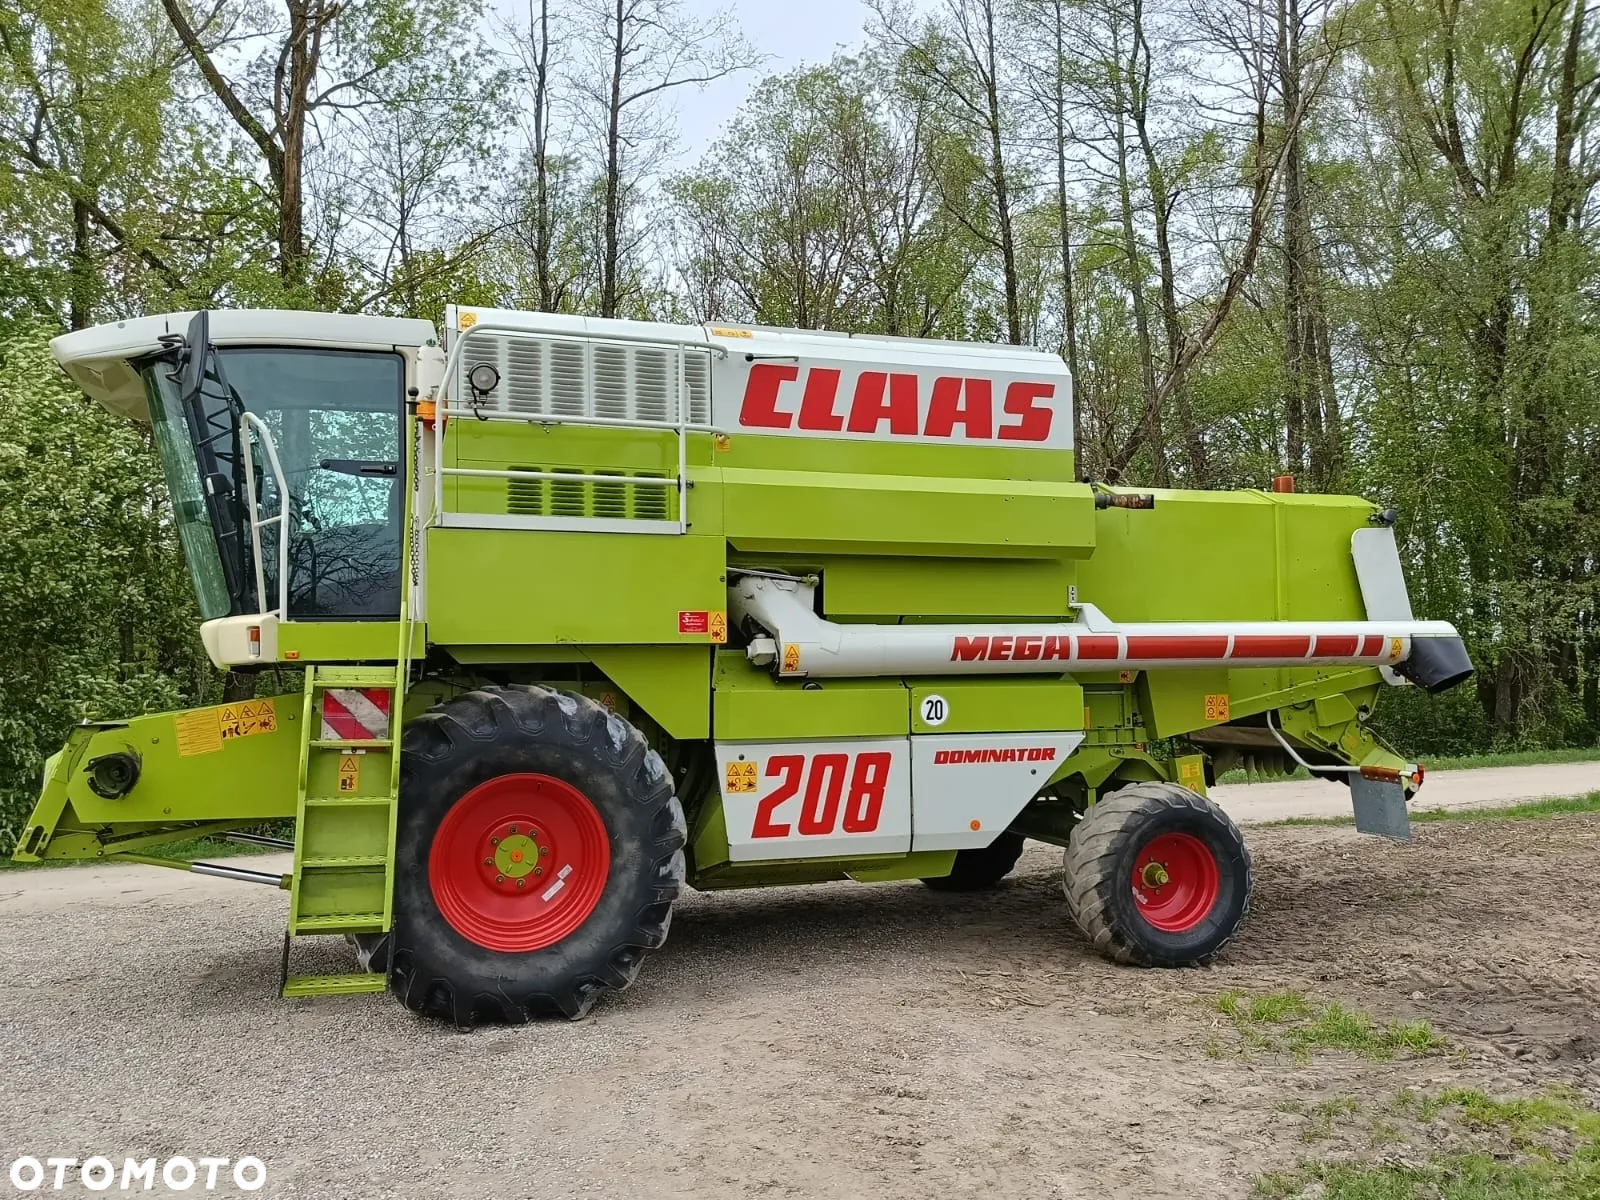 Claas Mega 208 - 3